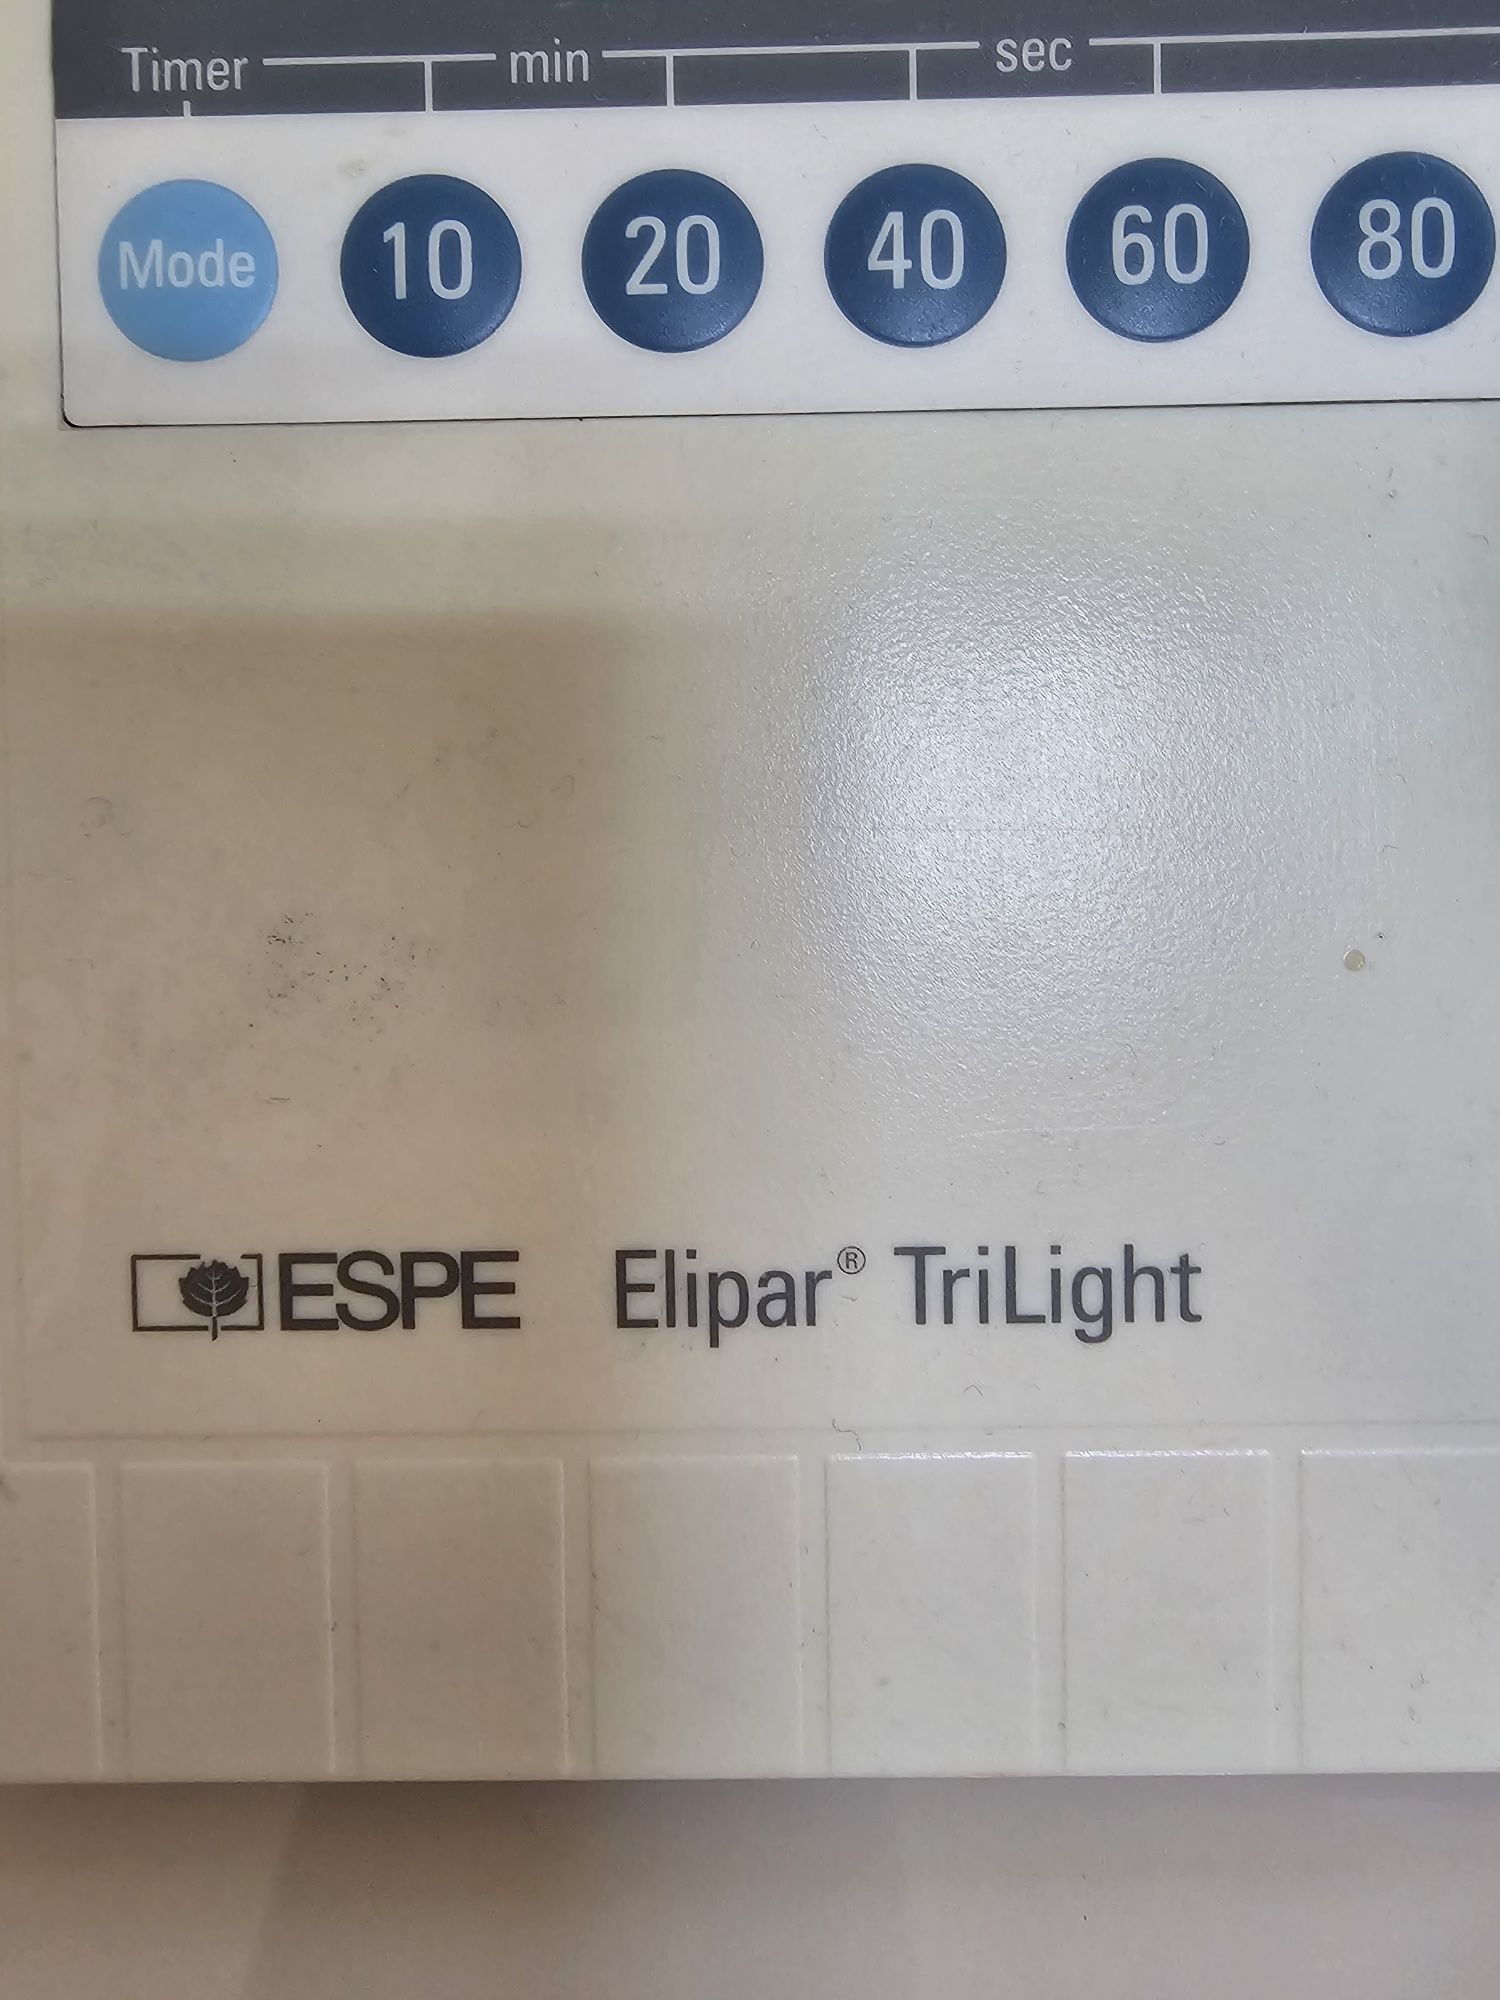 Lampa polimeryzacyjna 3m ESPE EPILAR TRILIGHT